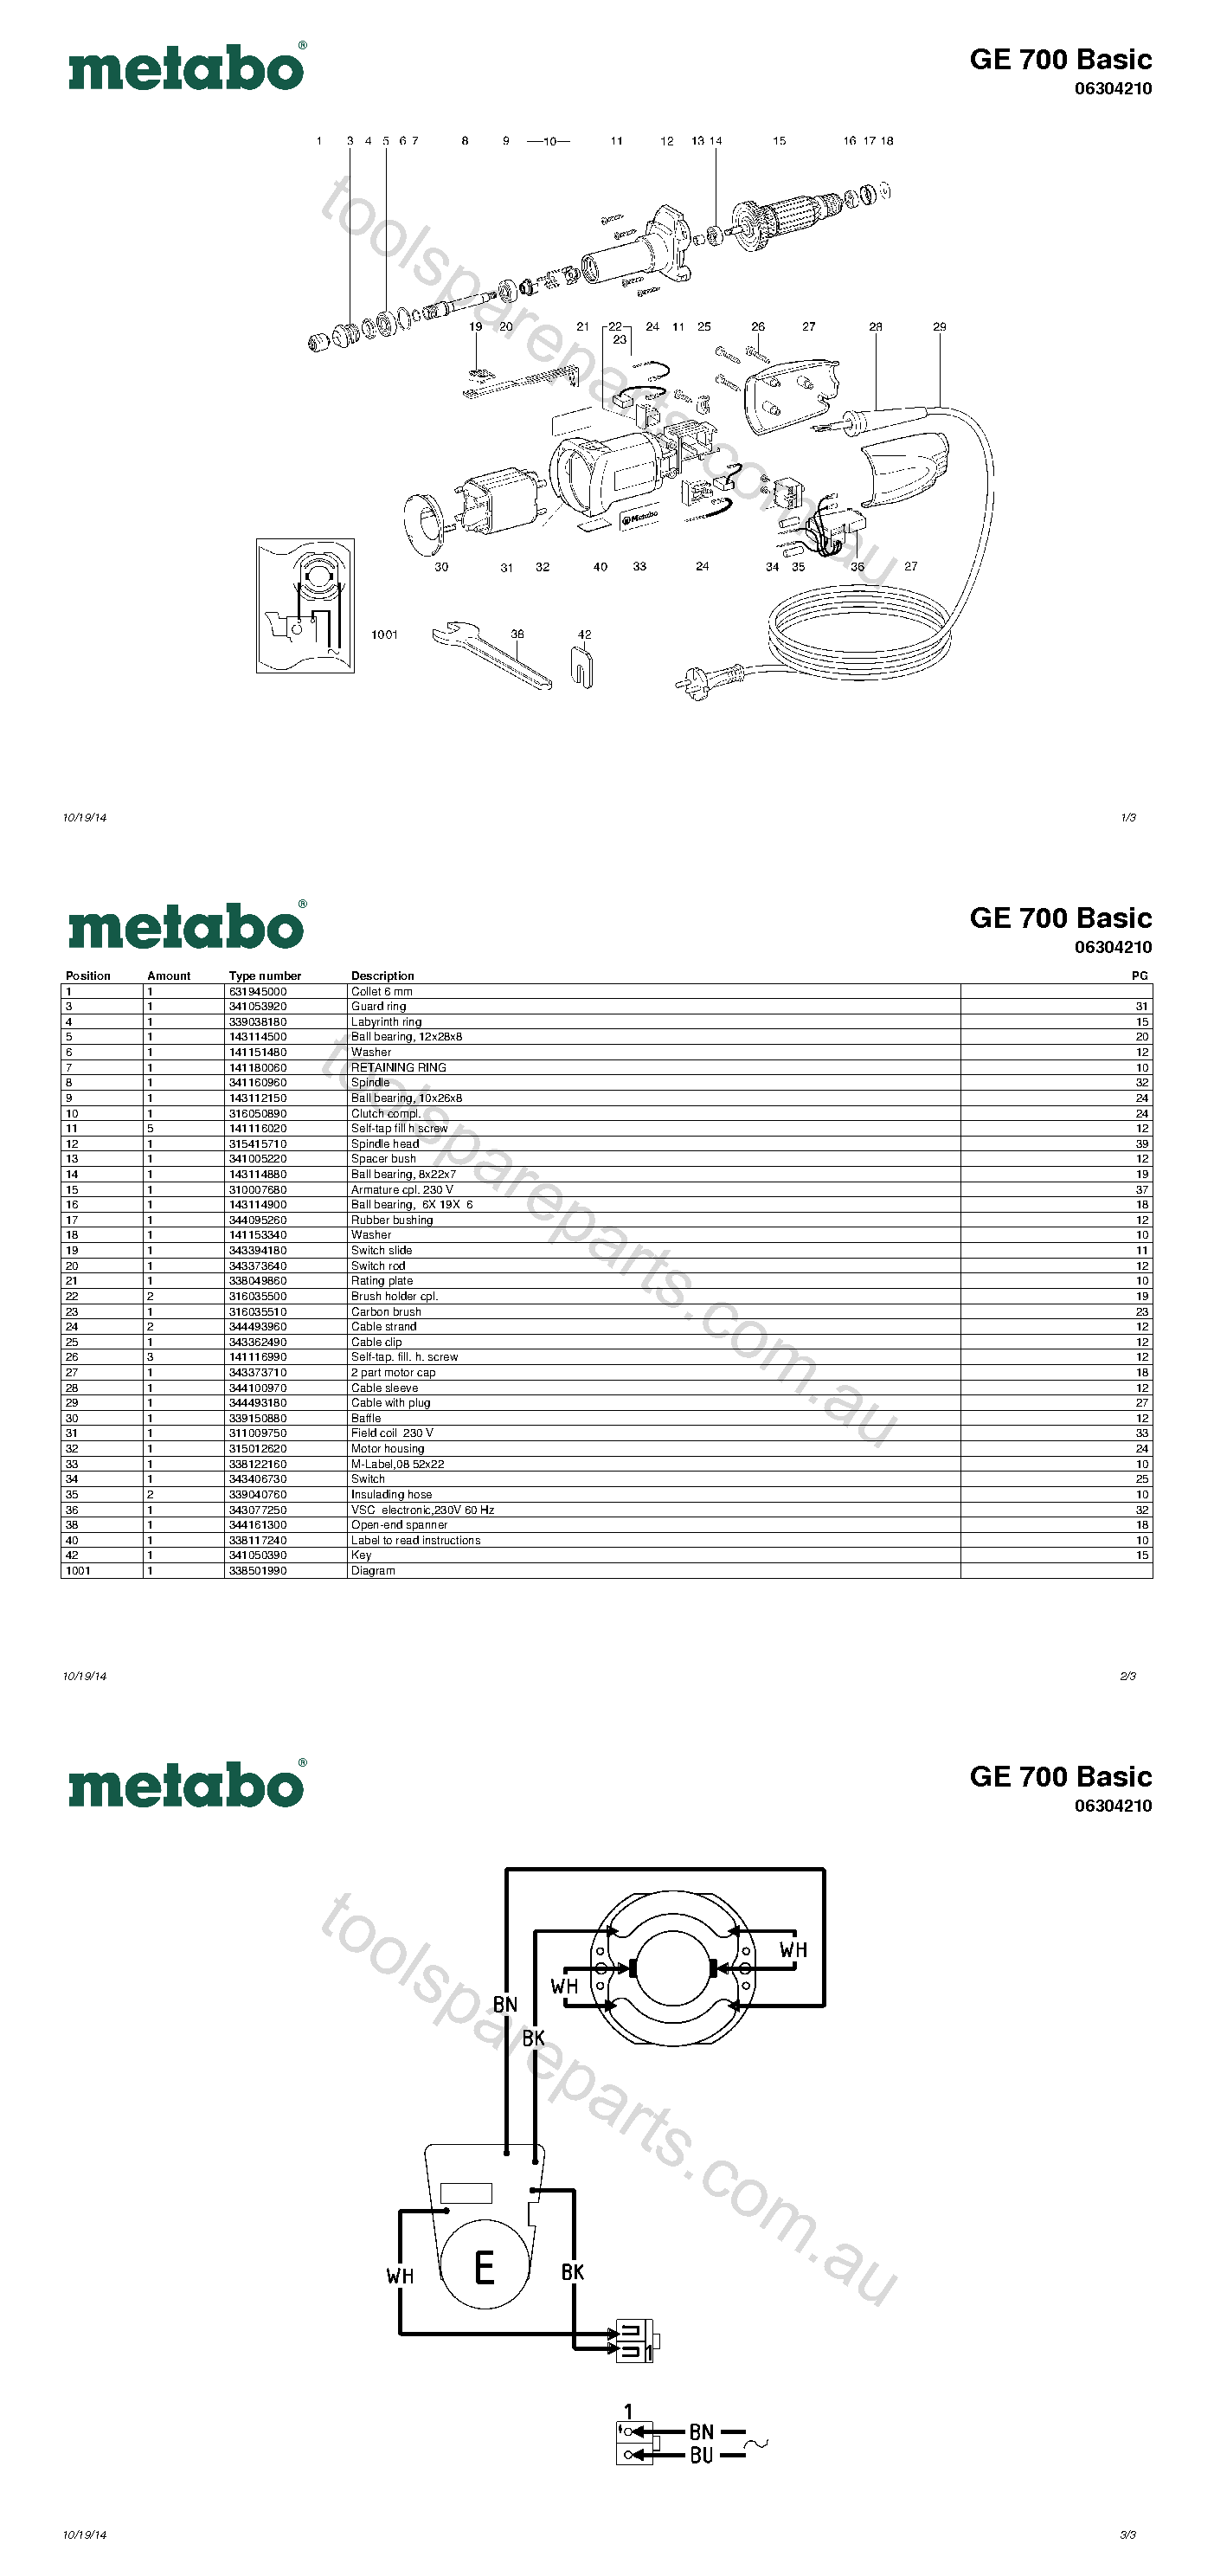 Metabo GE 700 Basic 06304210  Diagram 1